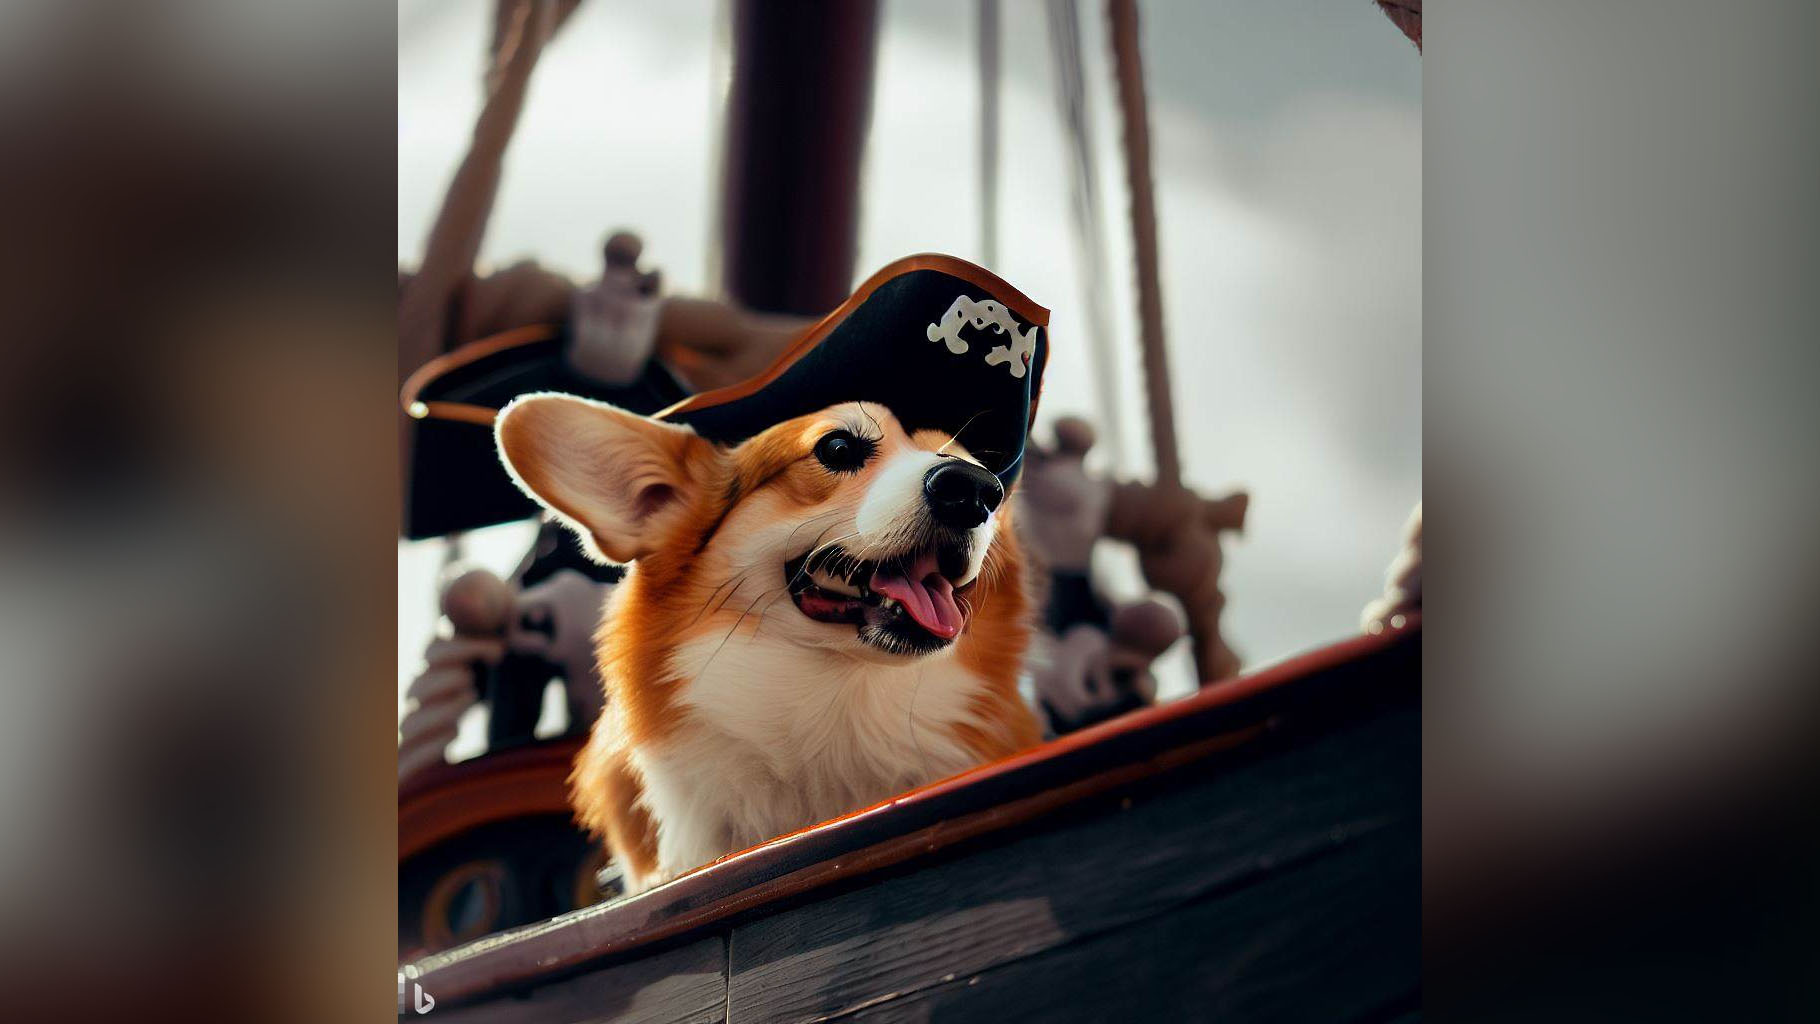 Indicador de Bing Image Creator: corgi pirata fotorrealista en su barco.